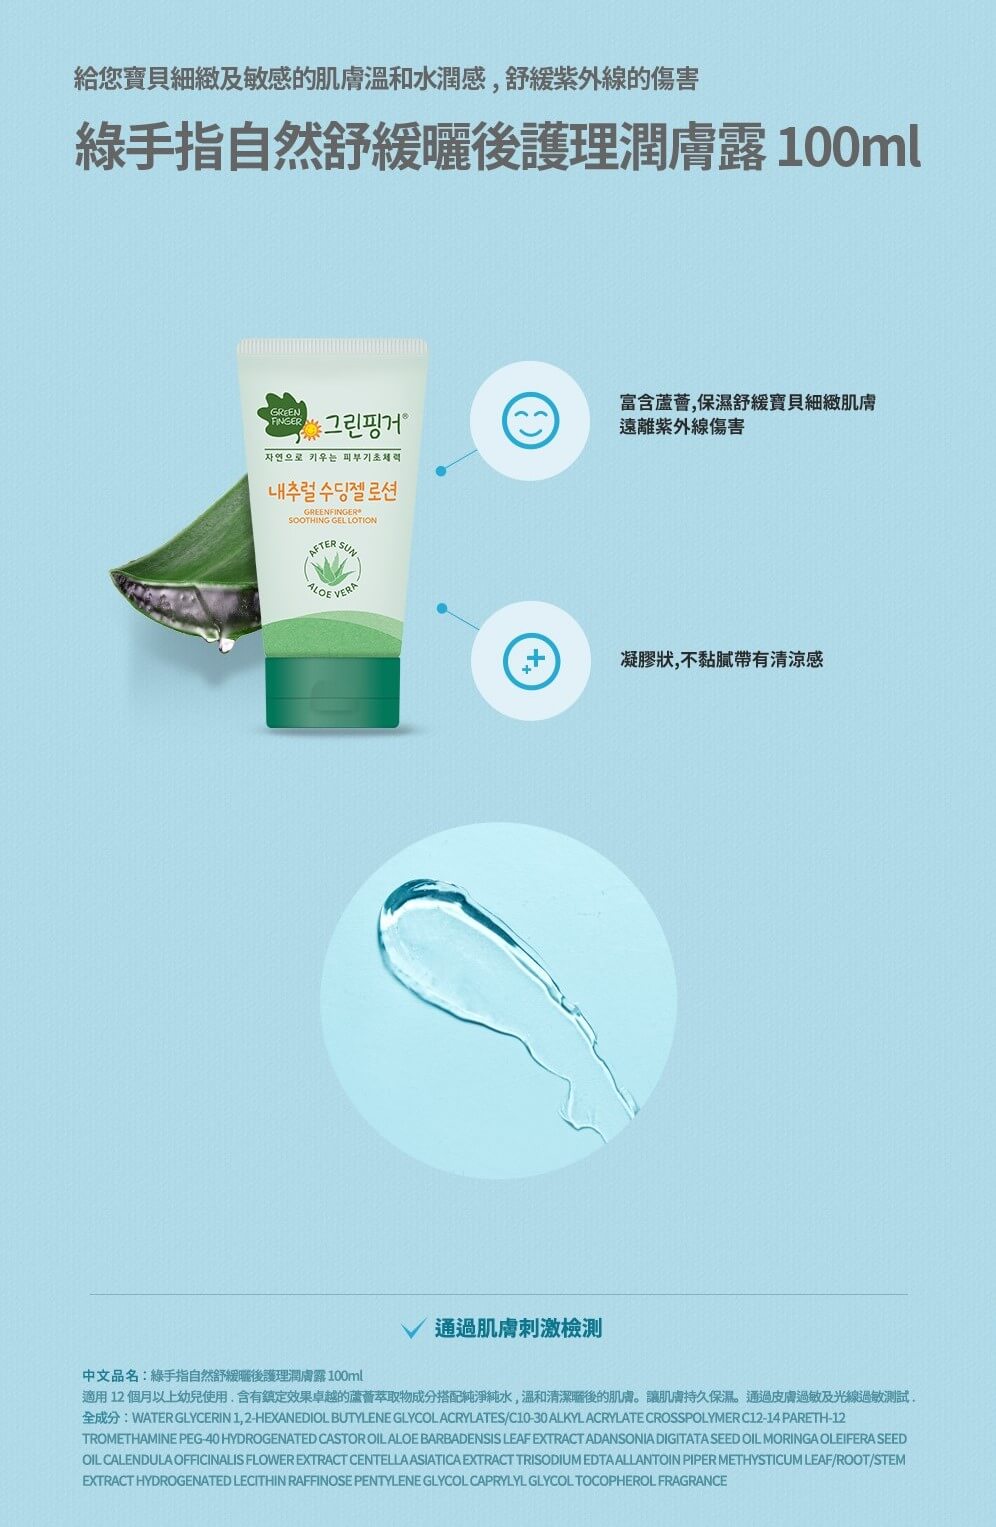 綠手指自然舒緩曬後護理潤膚露產品介紹